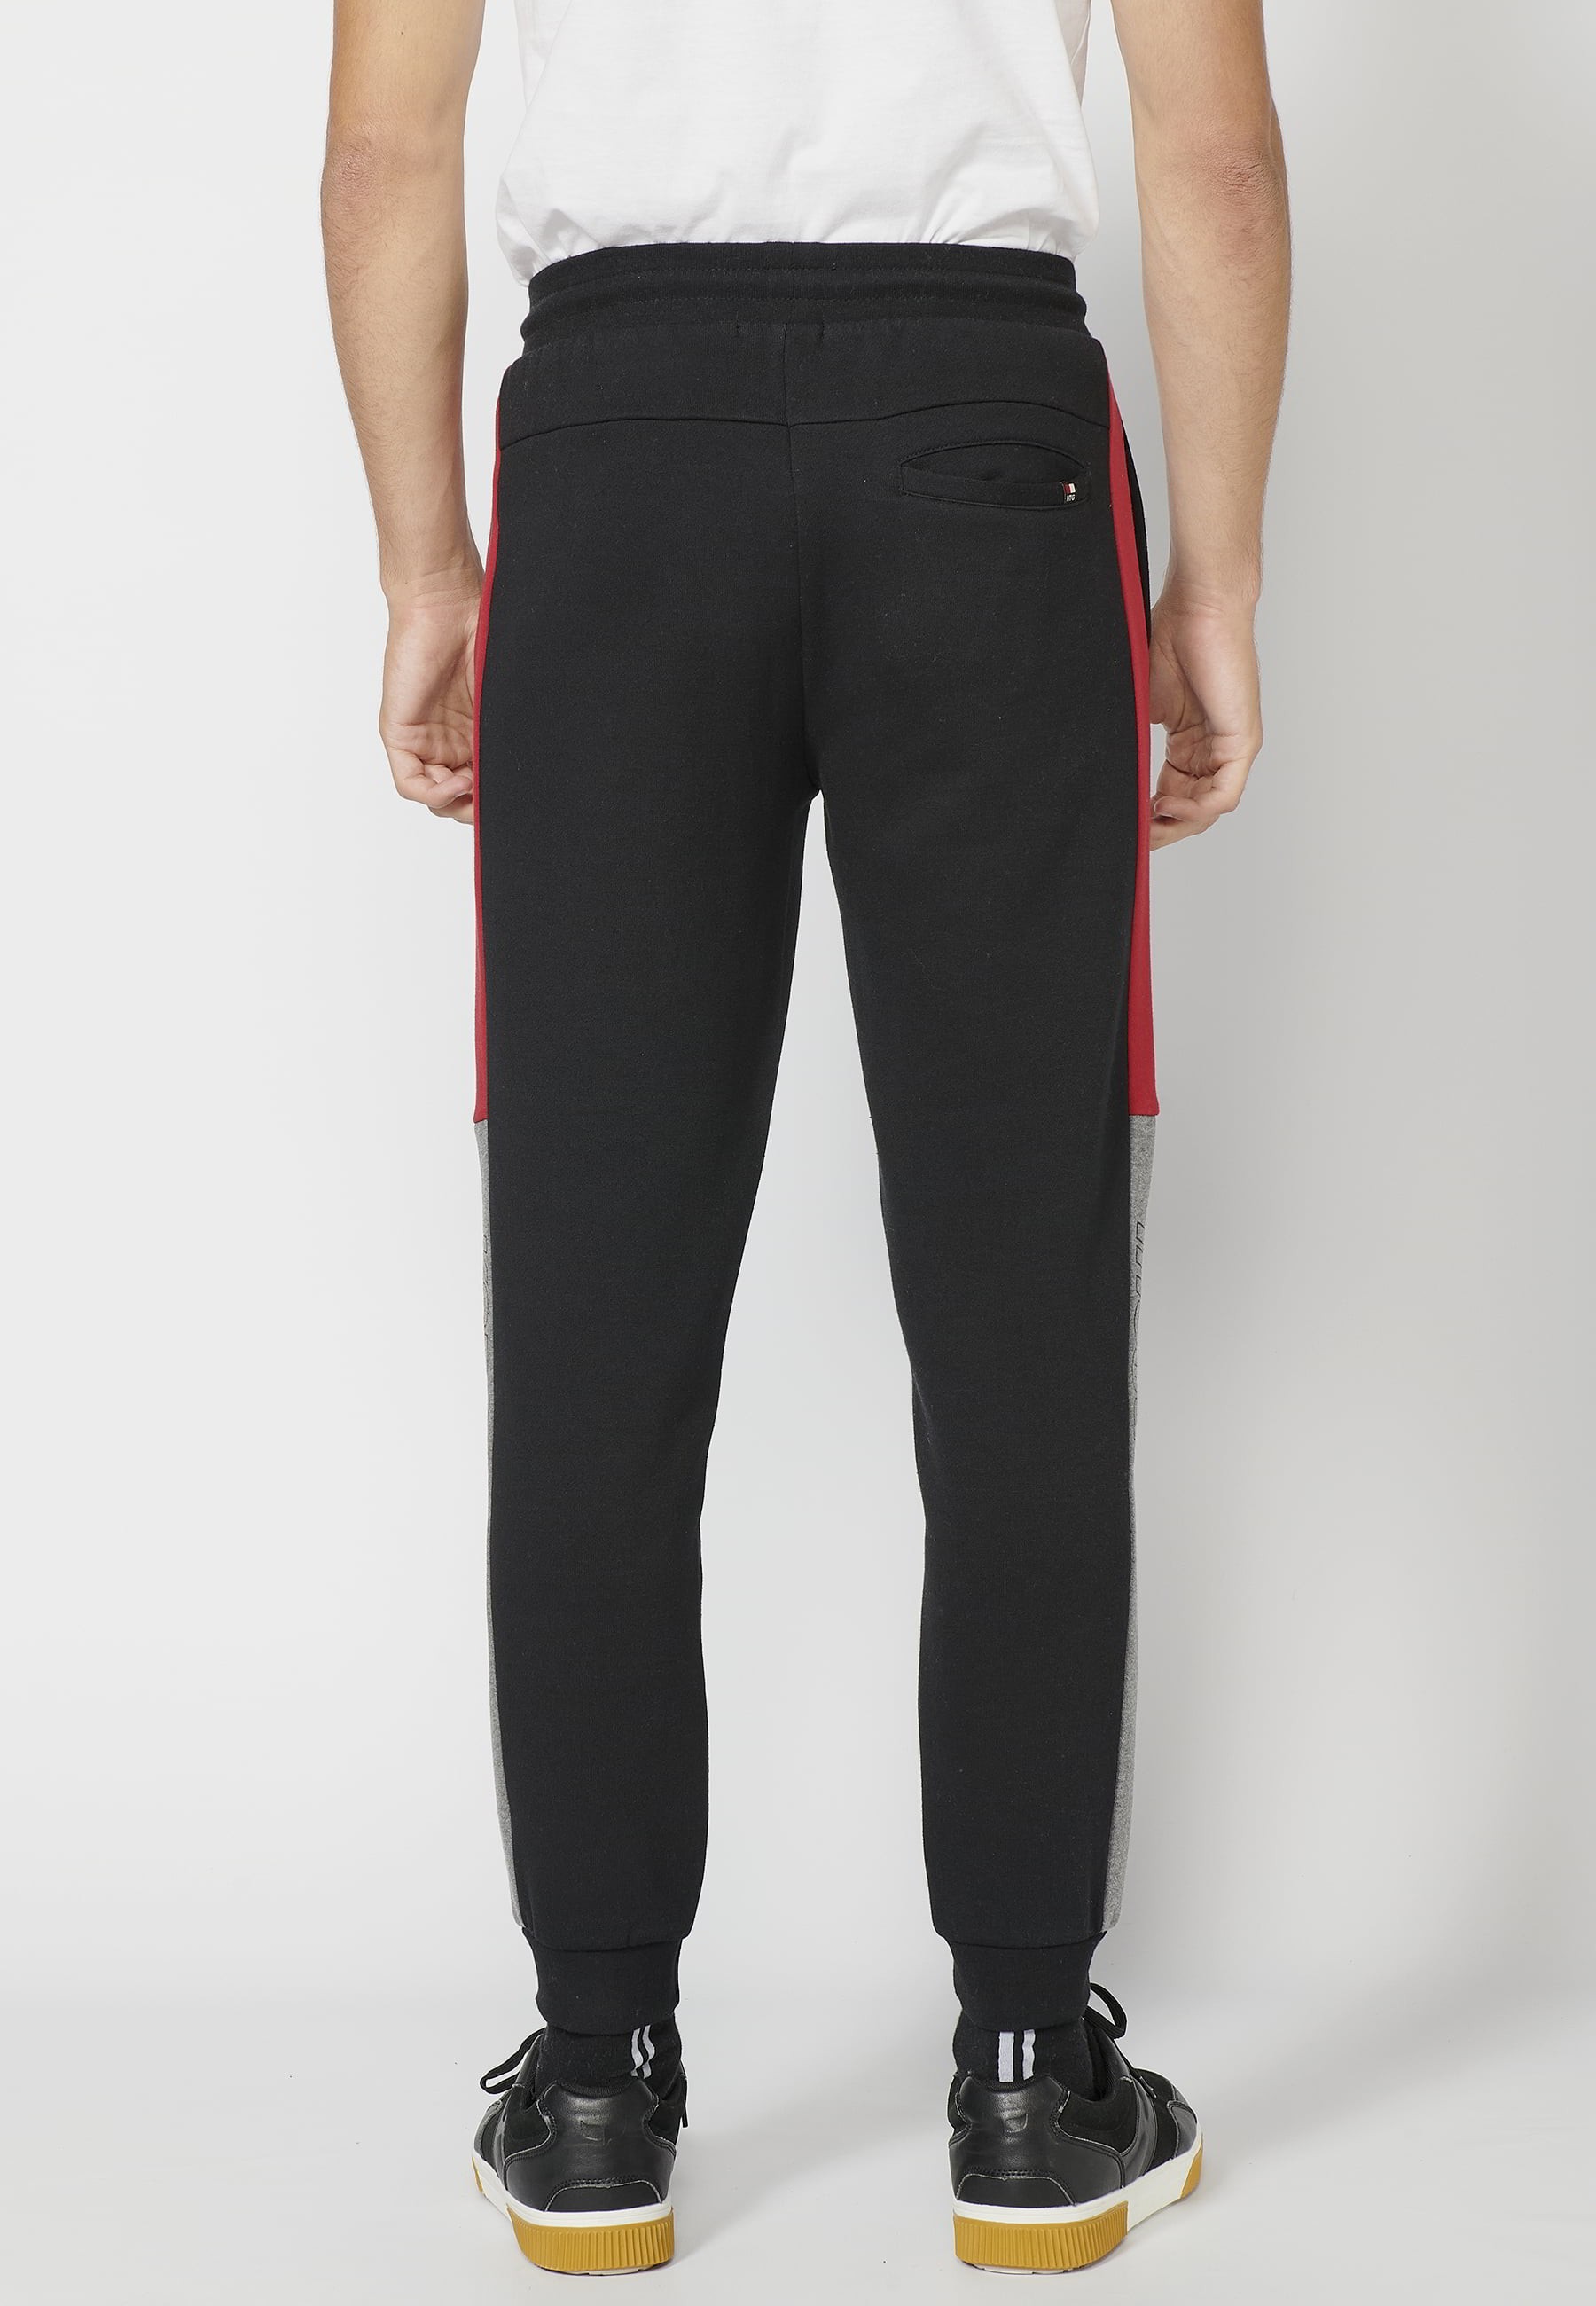 Lange Jogginghose mit verstellbarem elastischem Bund, Seitendetail, schwarze Farbe für Herren